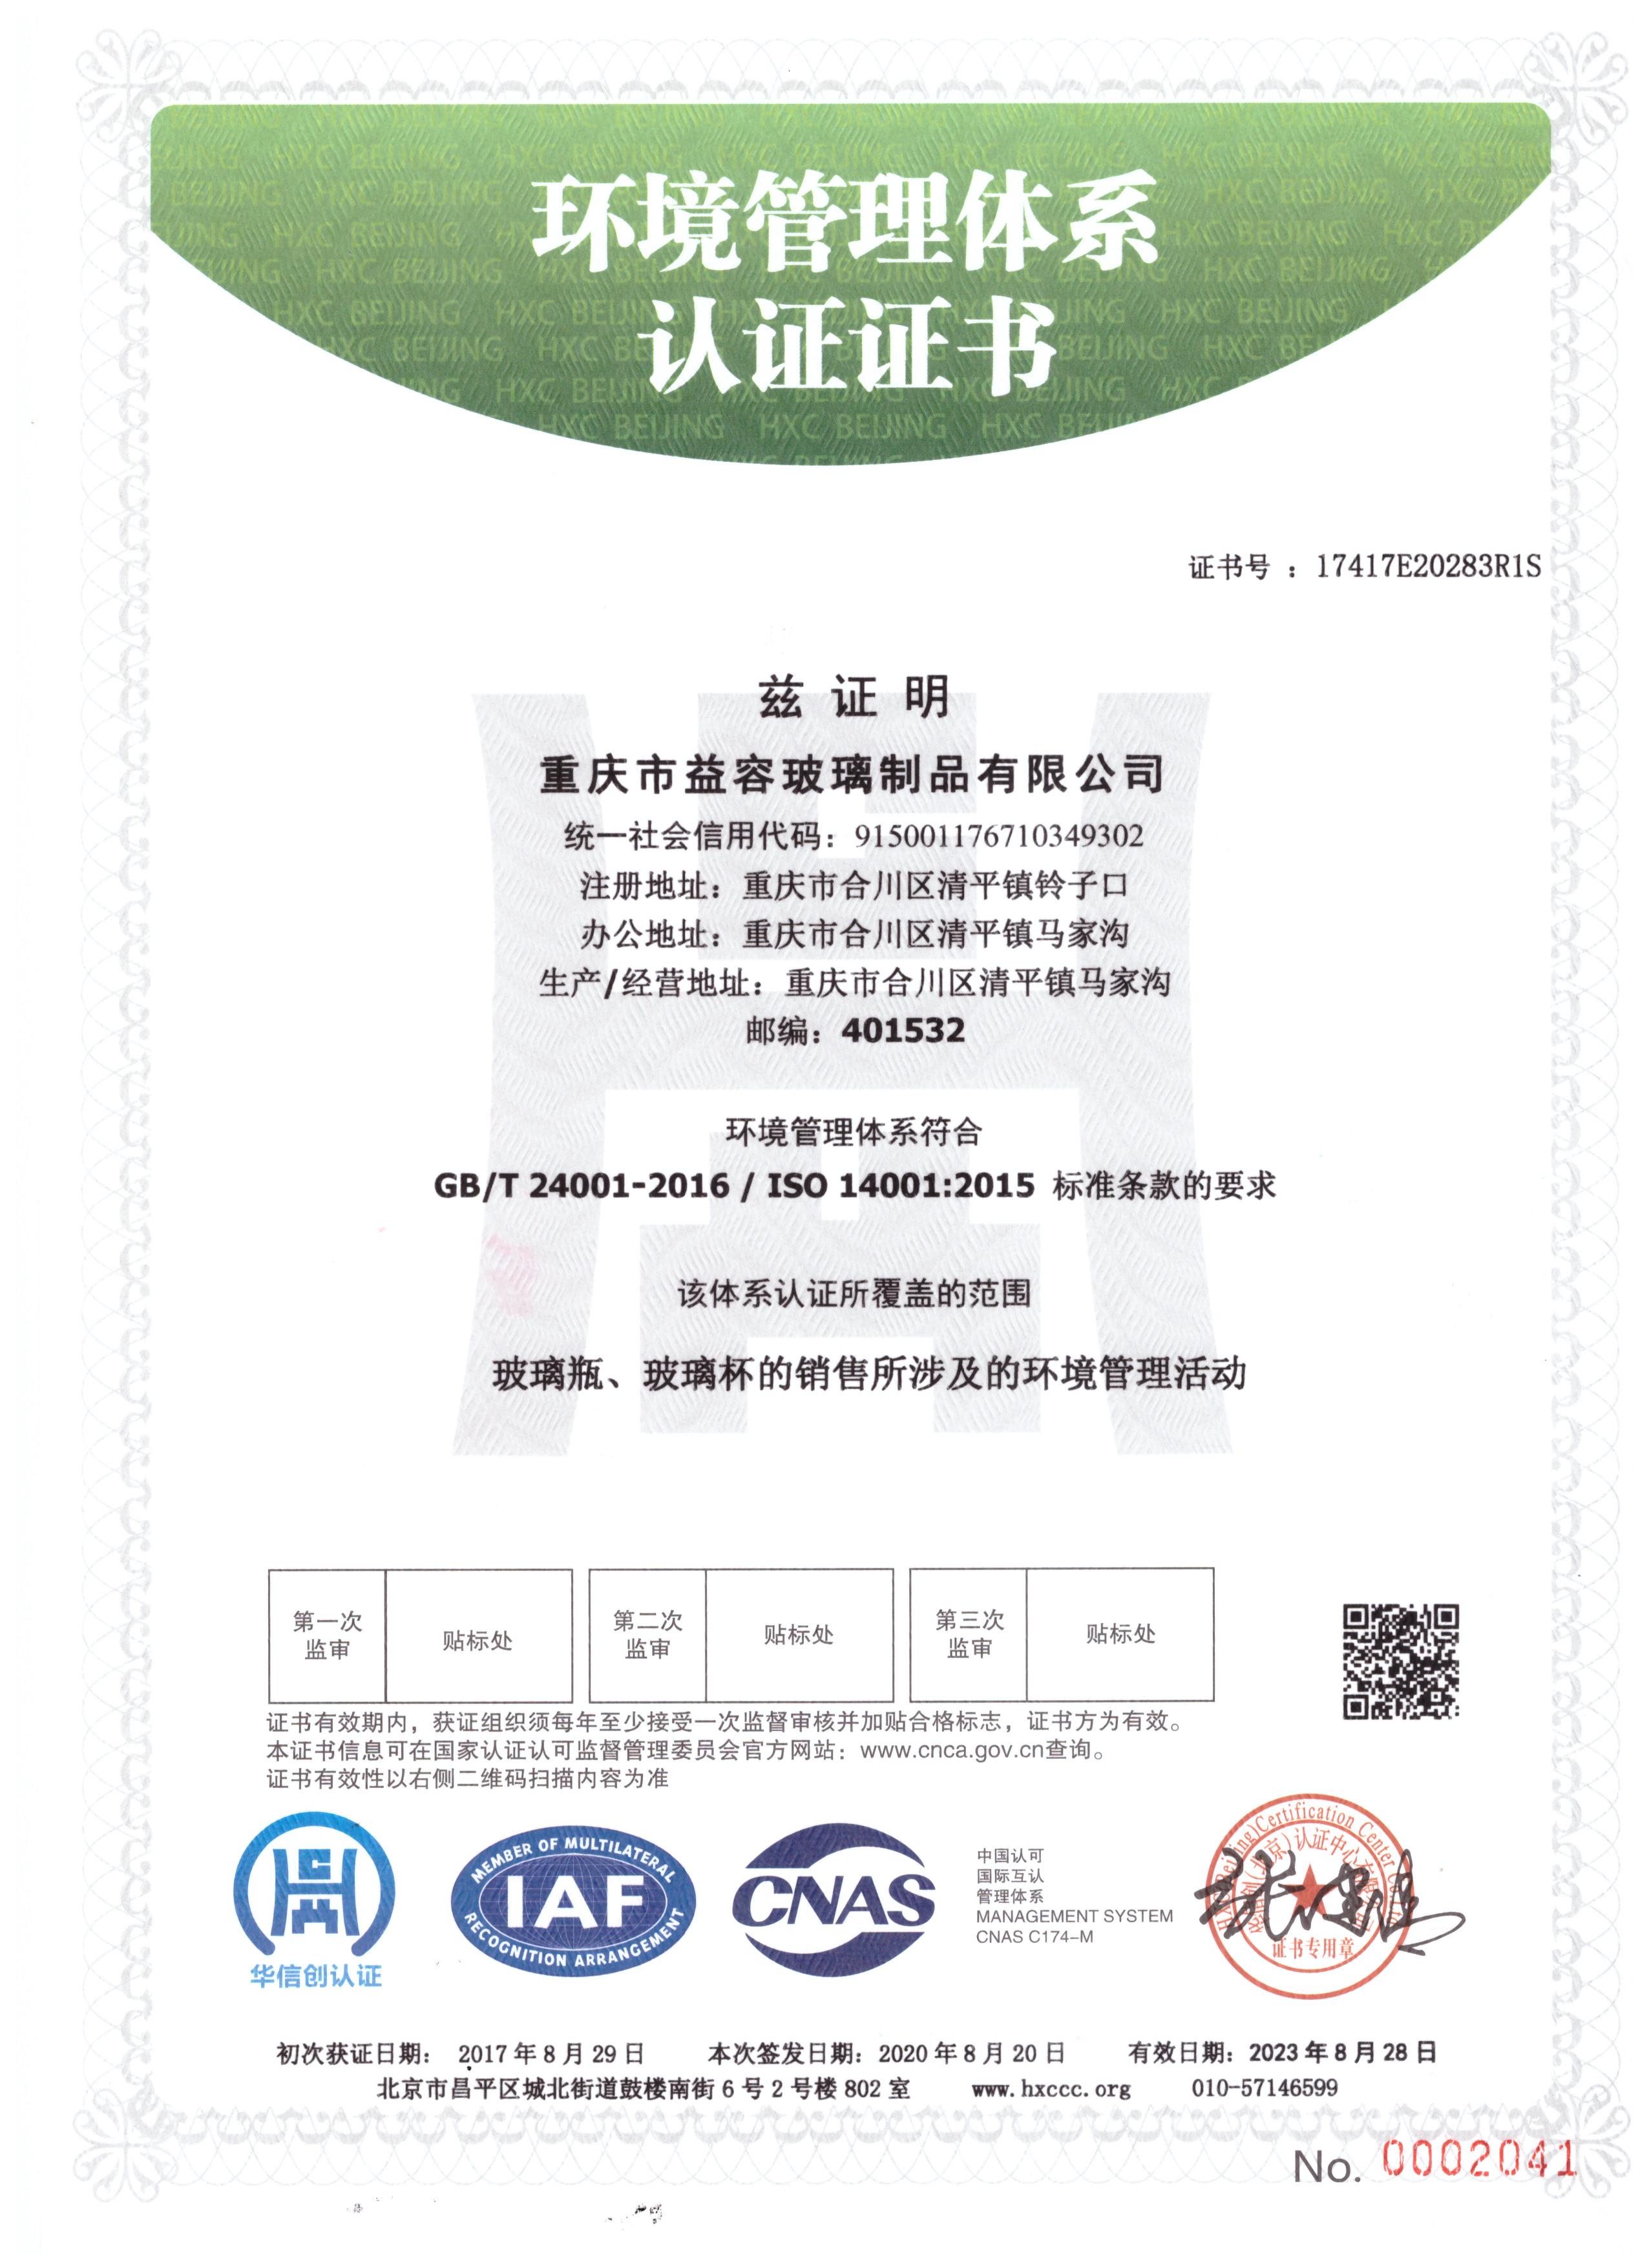 益容玻璃获得环境管理体系认证ISO:14